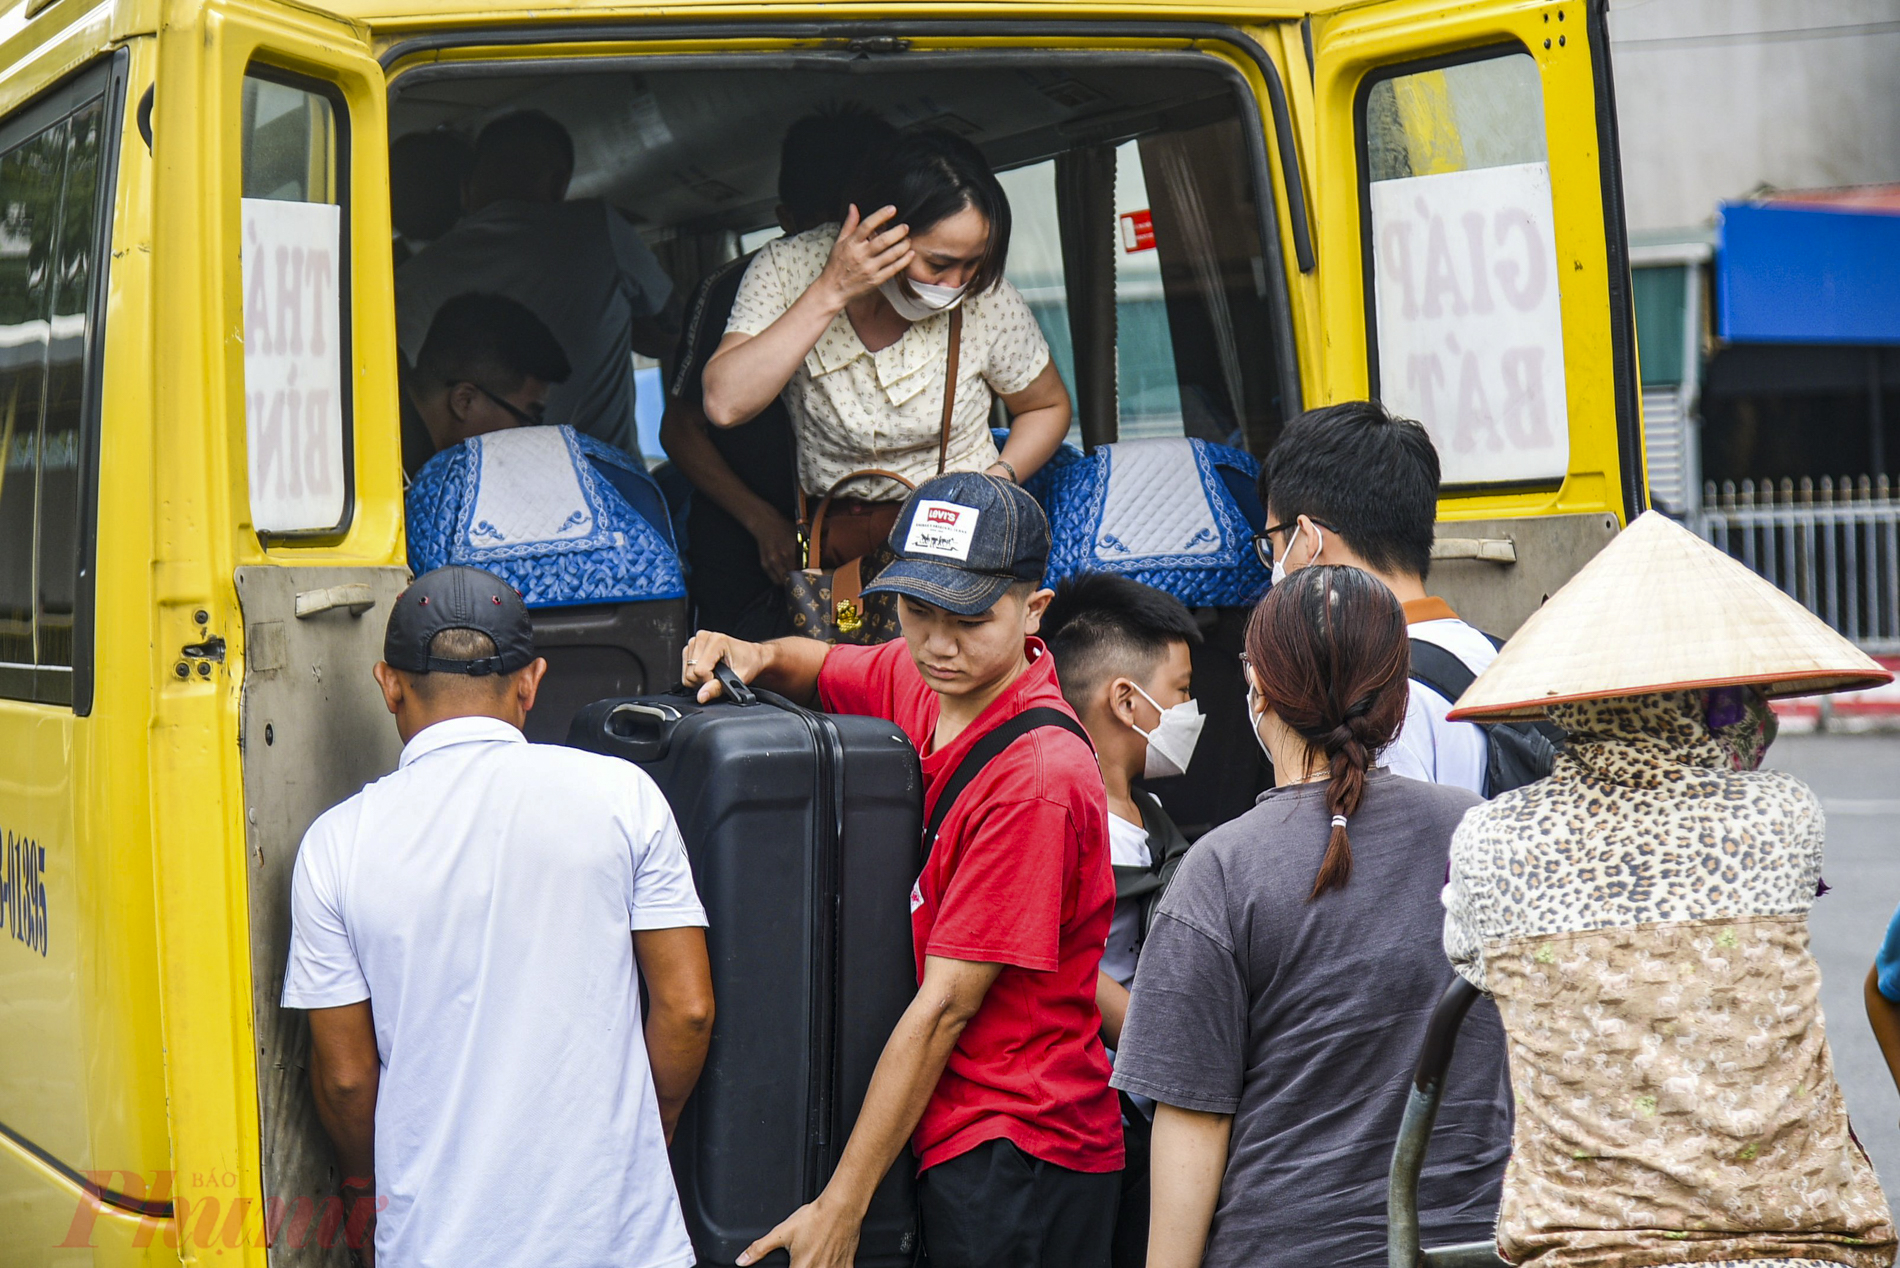 Vẻ mặt mệt mỏi của những hành khách sau chuyến đường dài từ quê lên Hà Nội.